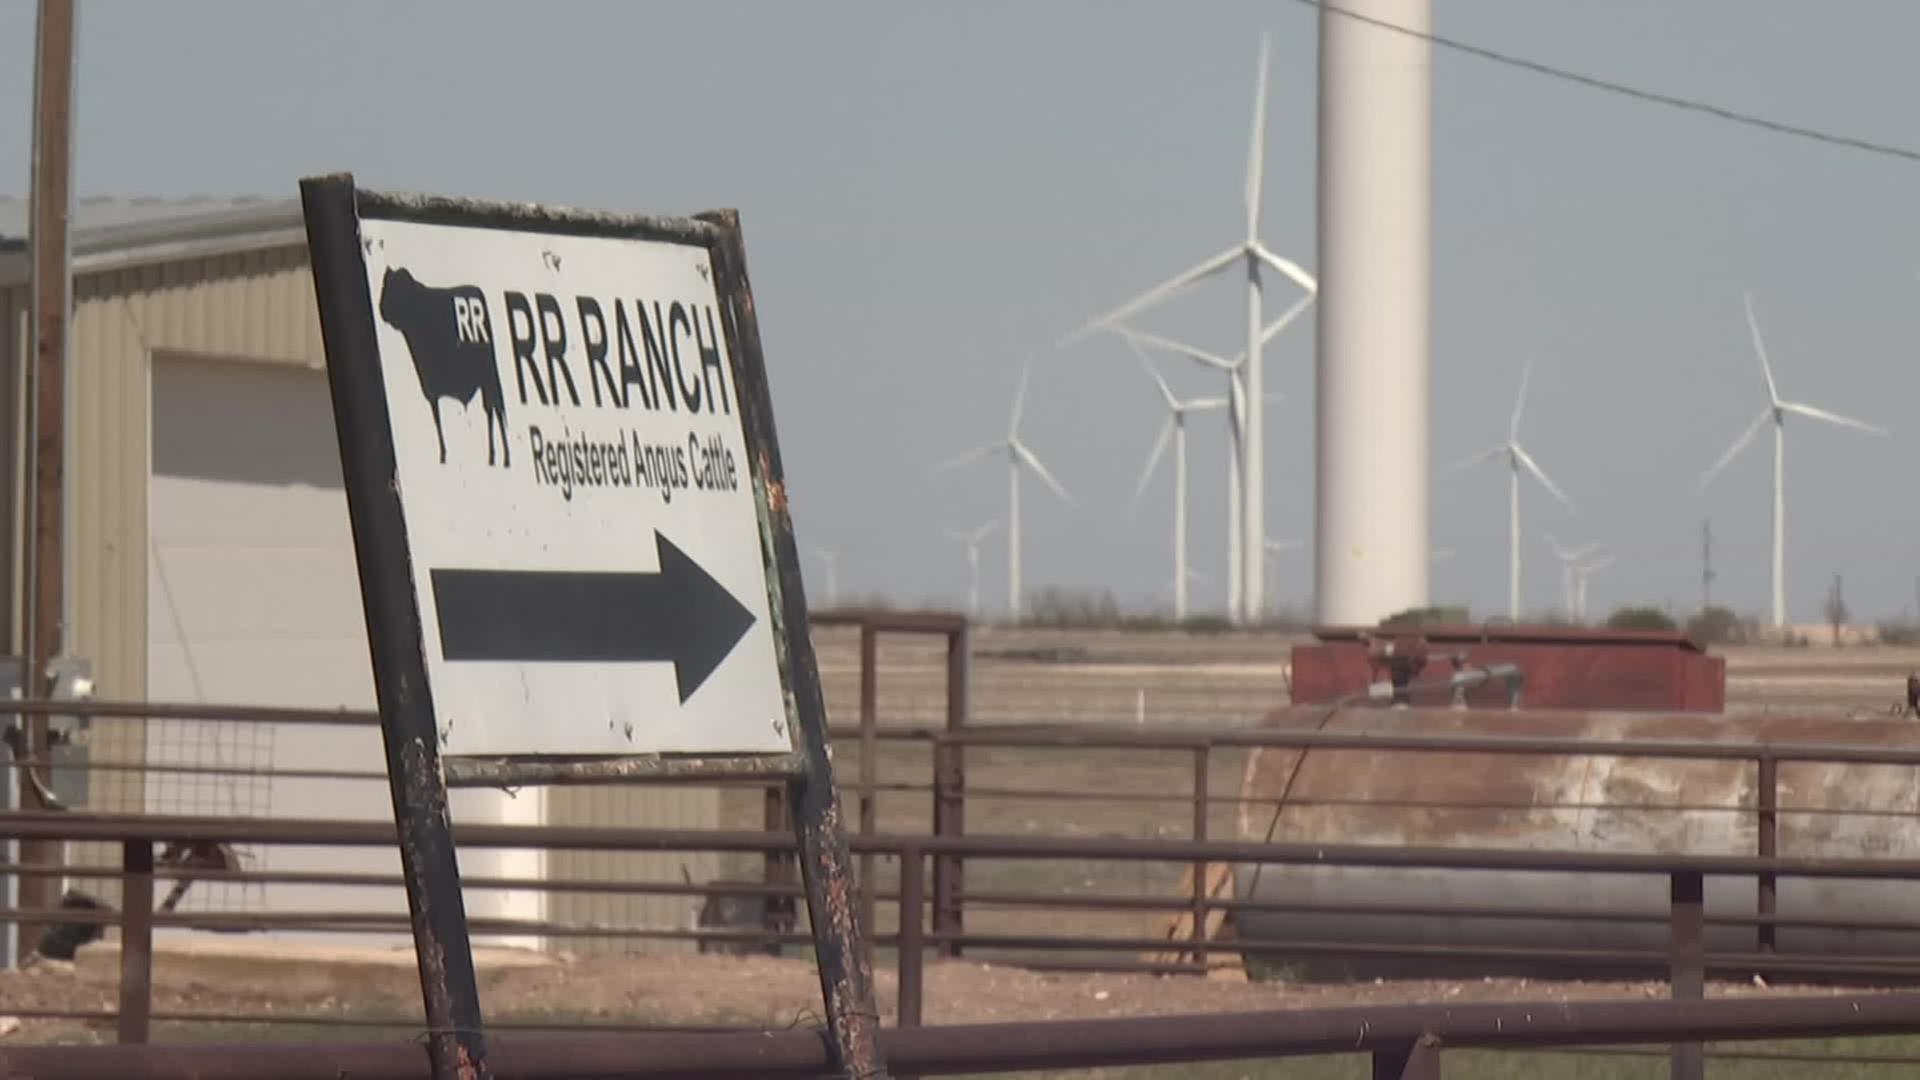 Im Vordergrund steht ein Rinder-Ranch-Schild und dahinter sind viele Windkrafträder